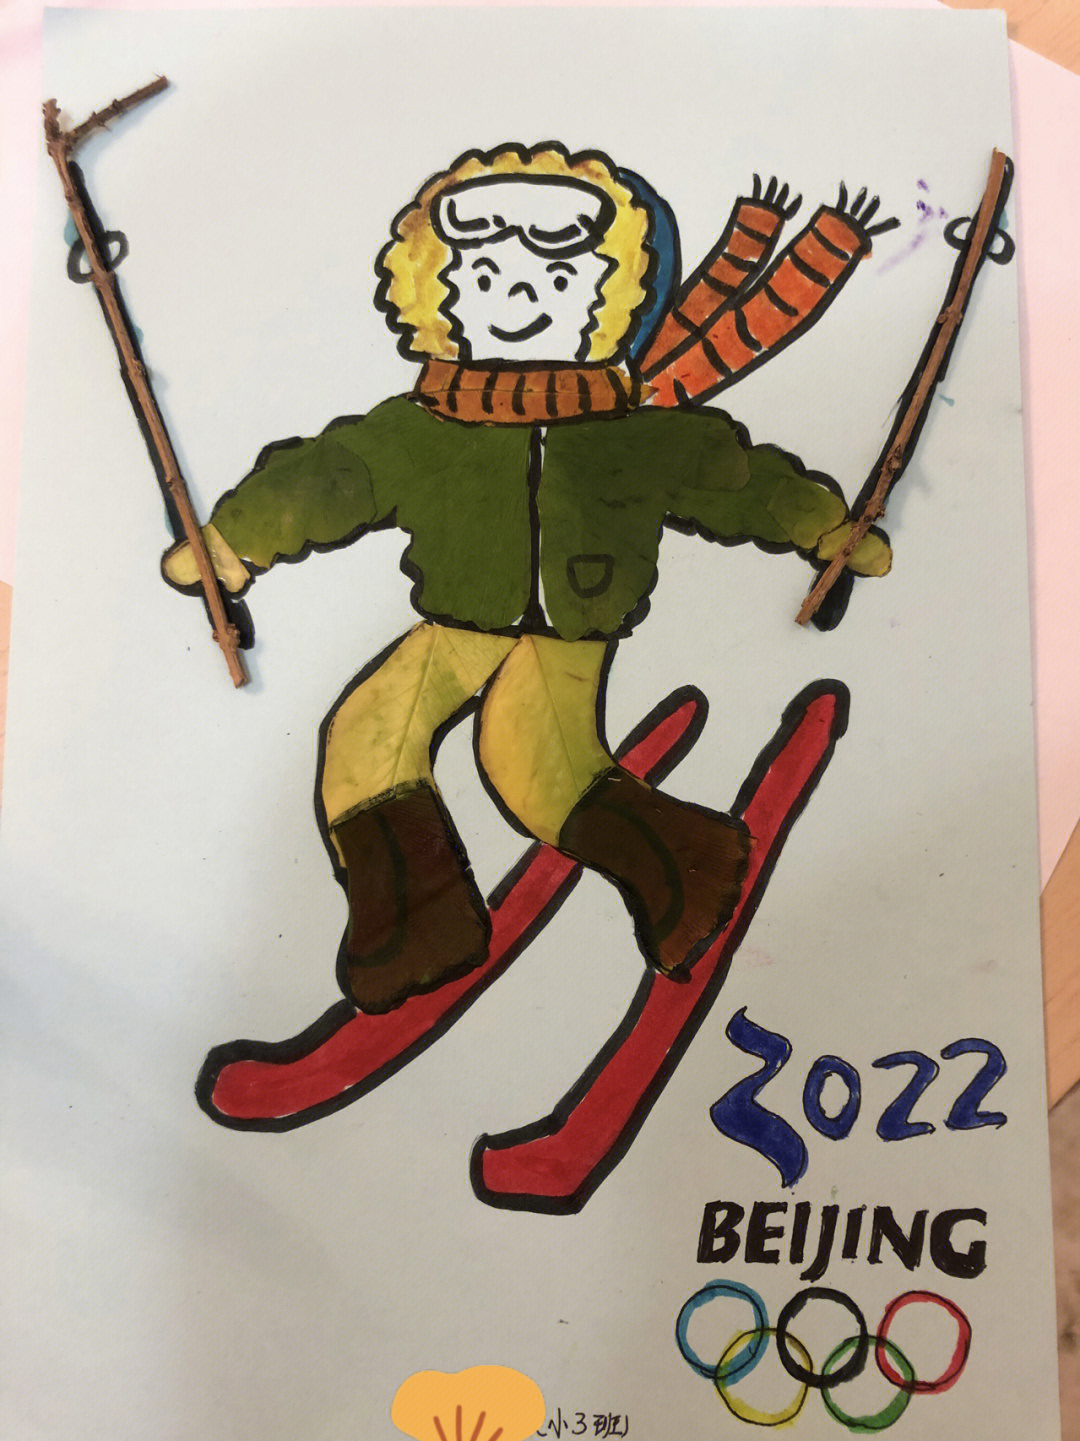 幼儿园秋季作业贴树叶北京冬奥会主题2022